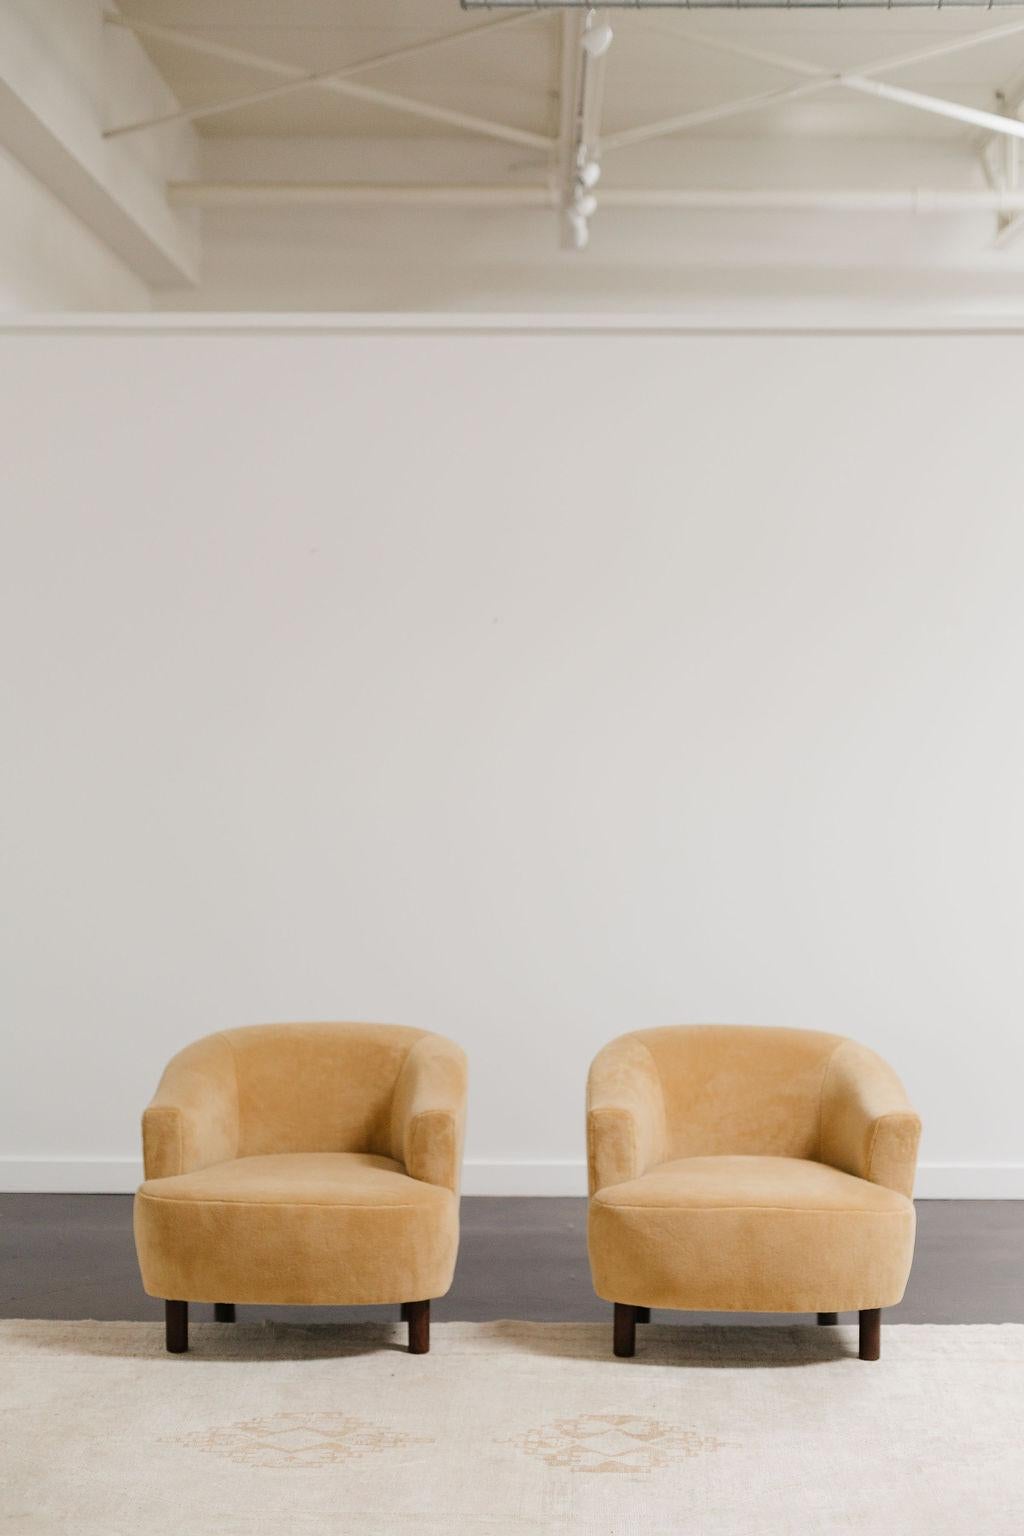 Diese Selig Furniture Company Loungesessel aus der Mitte des Jahrhunderts sind eine Hommage an ihre Originalpolsterung mit einem Hauch von Modernität. Mit einem modernen Zak + Fox-Stoff in einem gedämpften Staubgelb neu belebt, strahlen diese Stühle